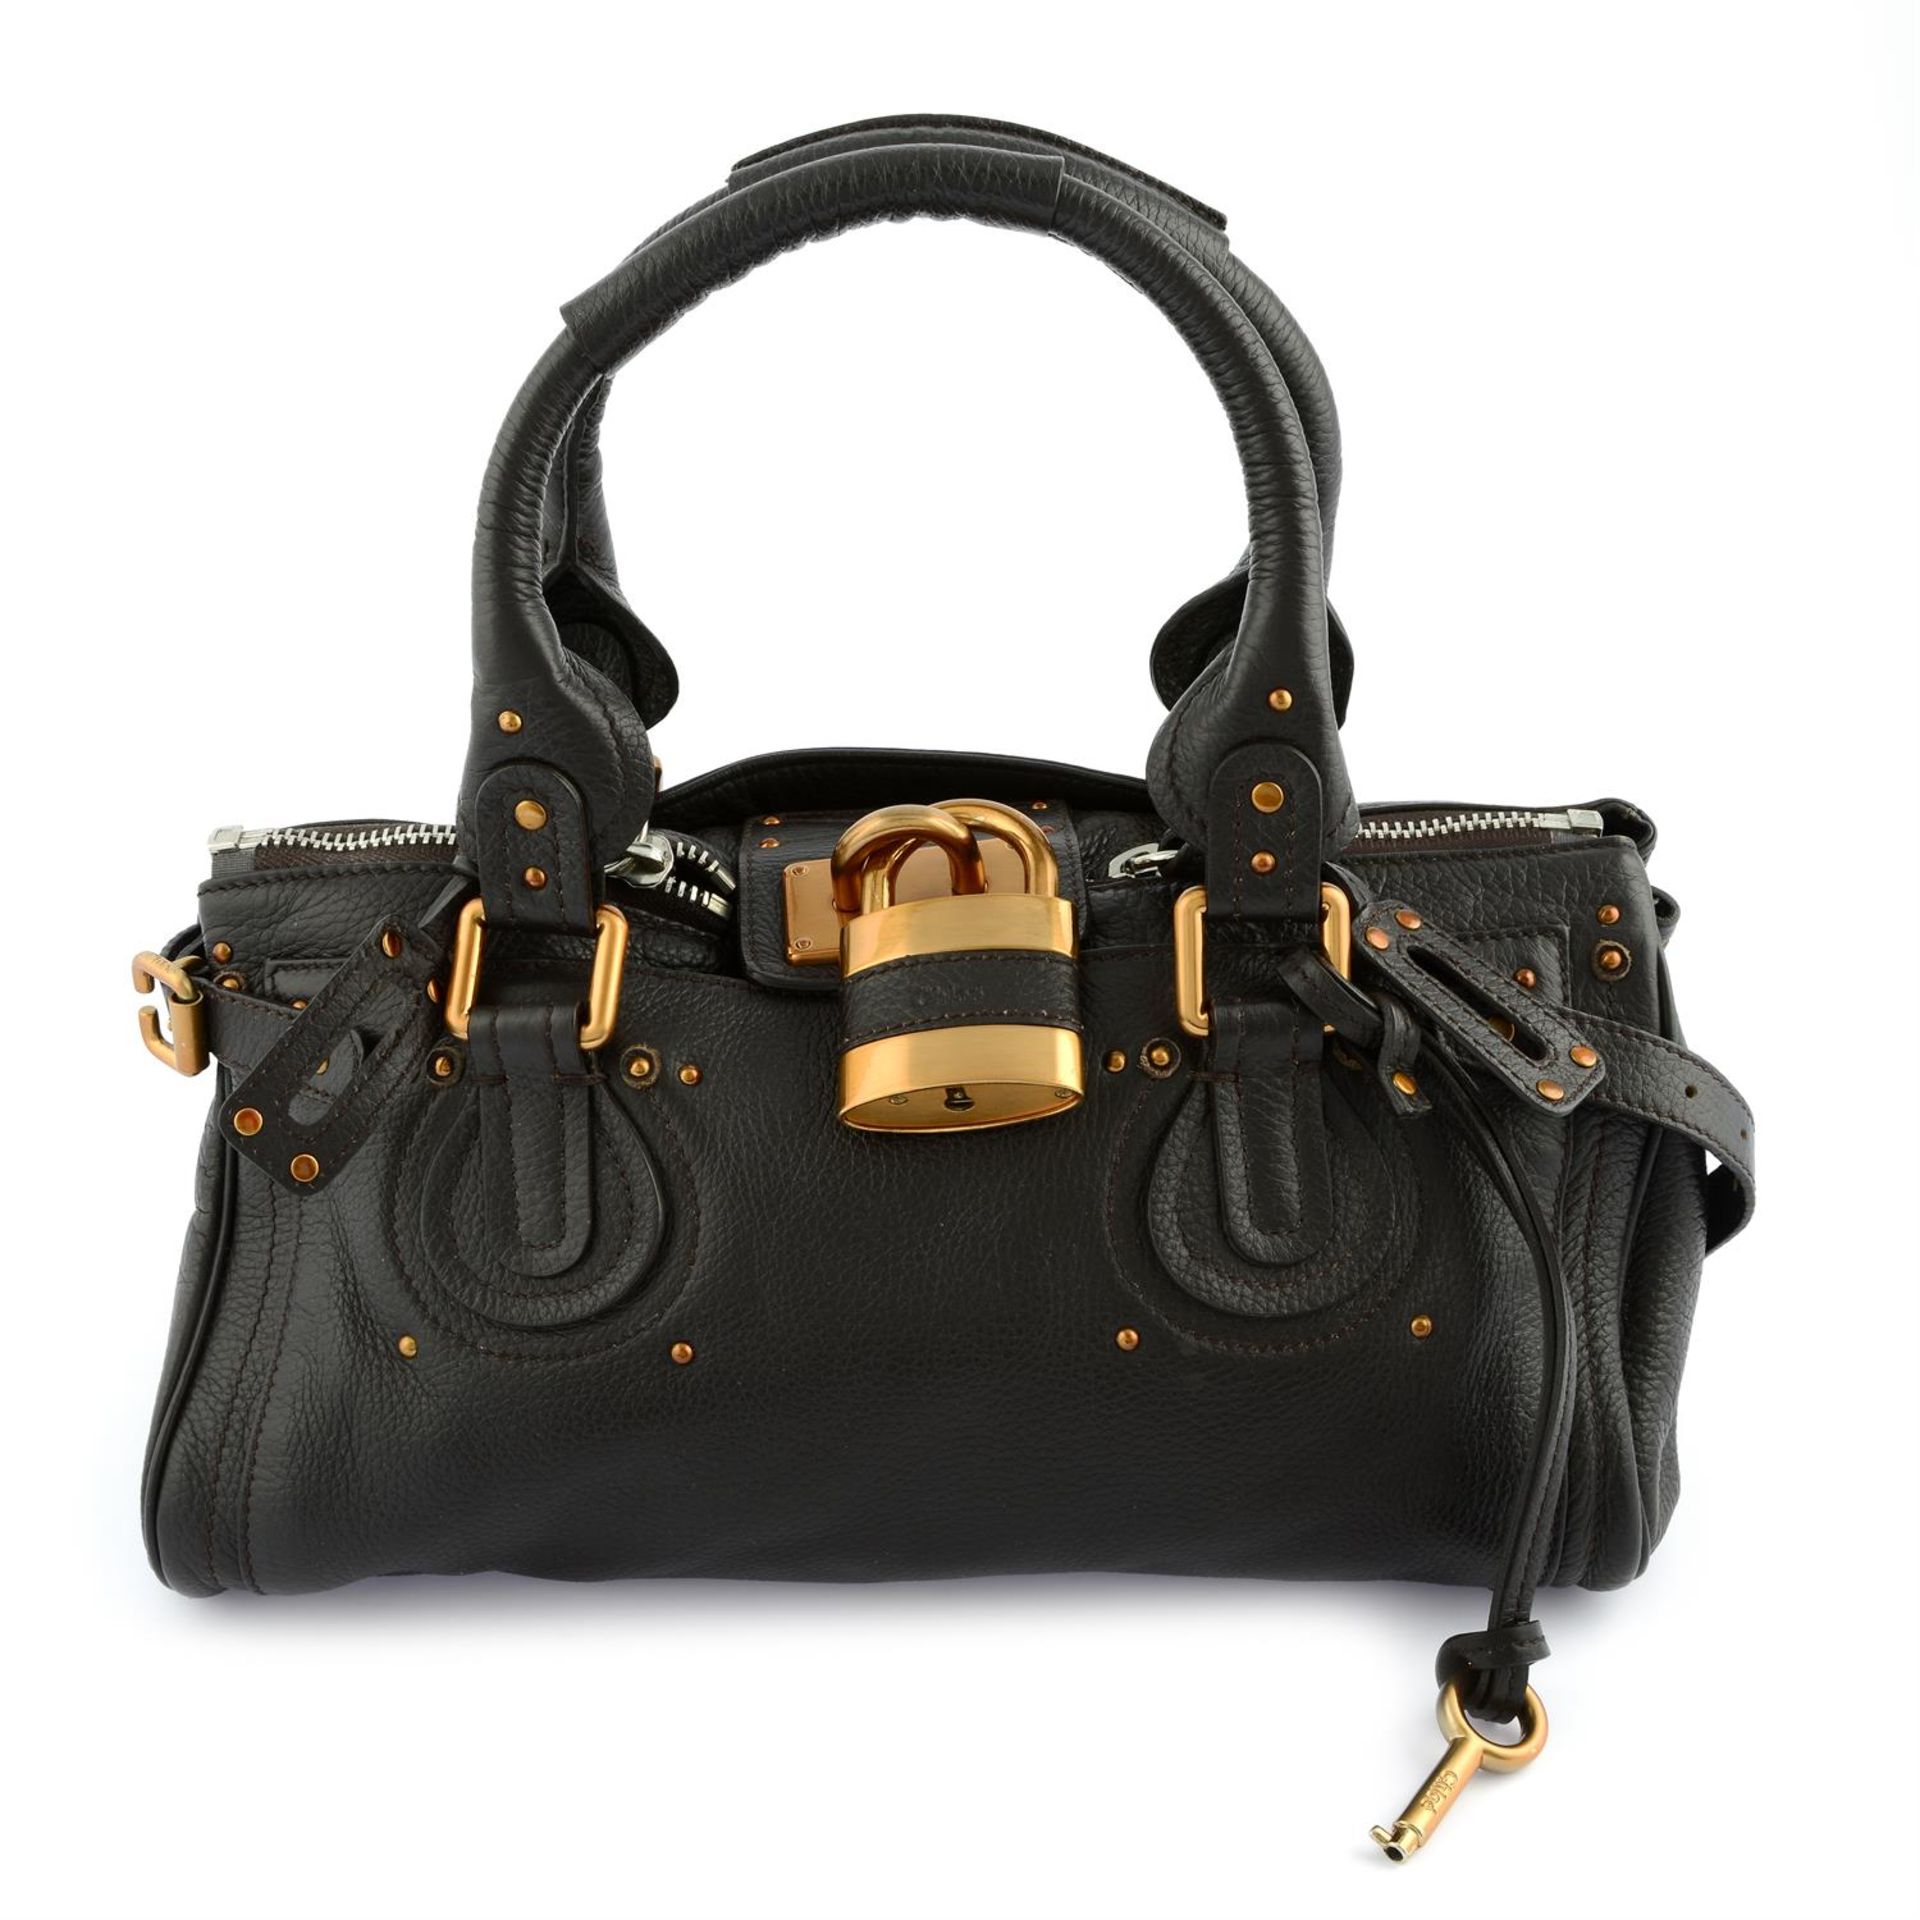 CHLOÉ- a black leather Paddington handbag.